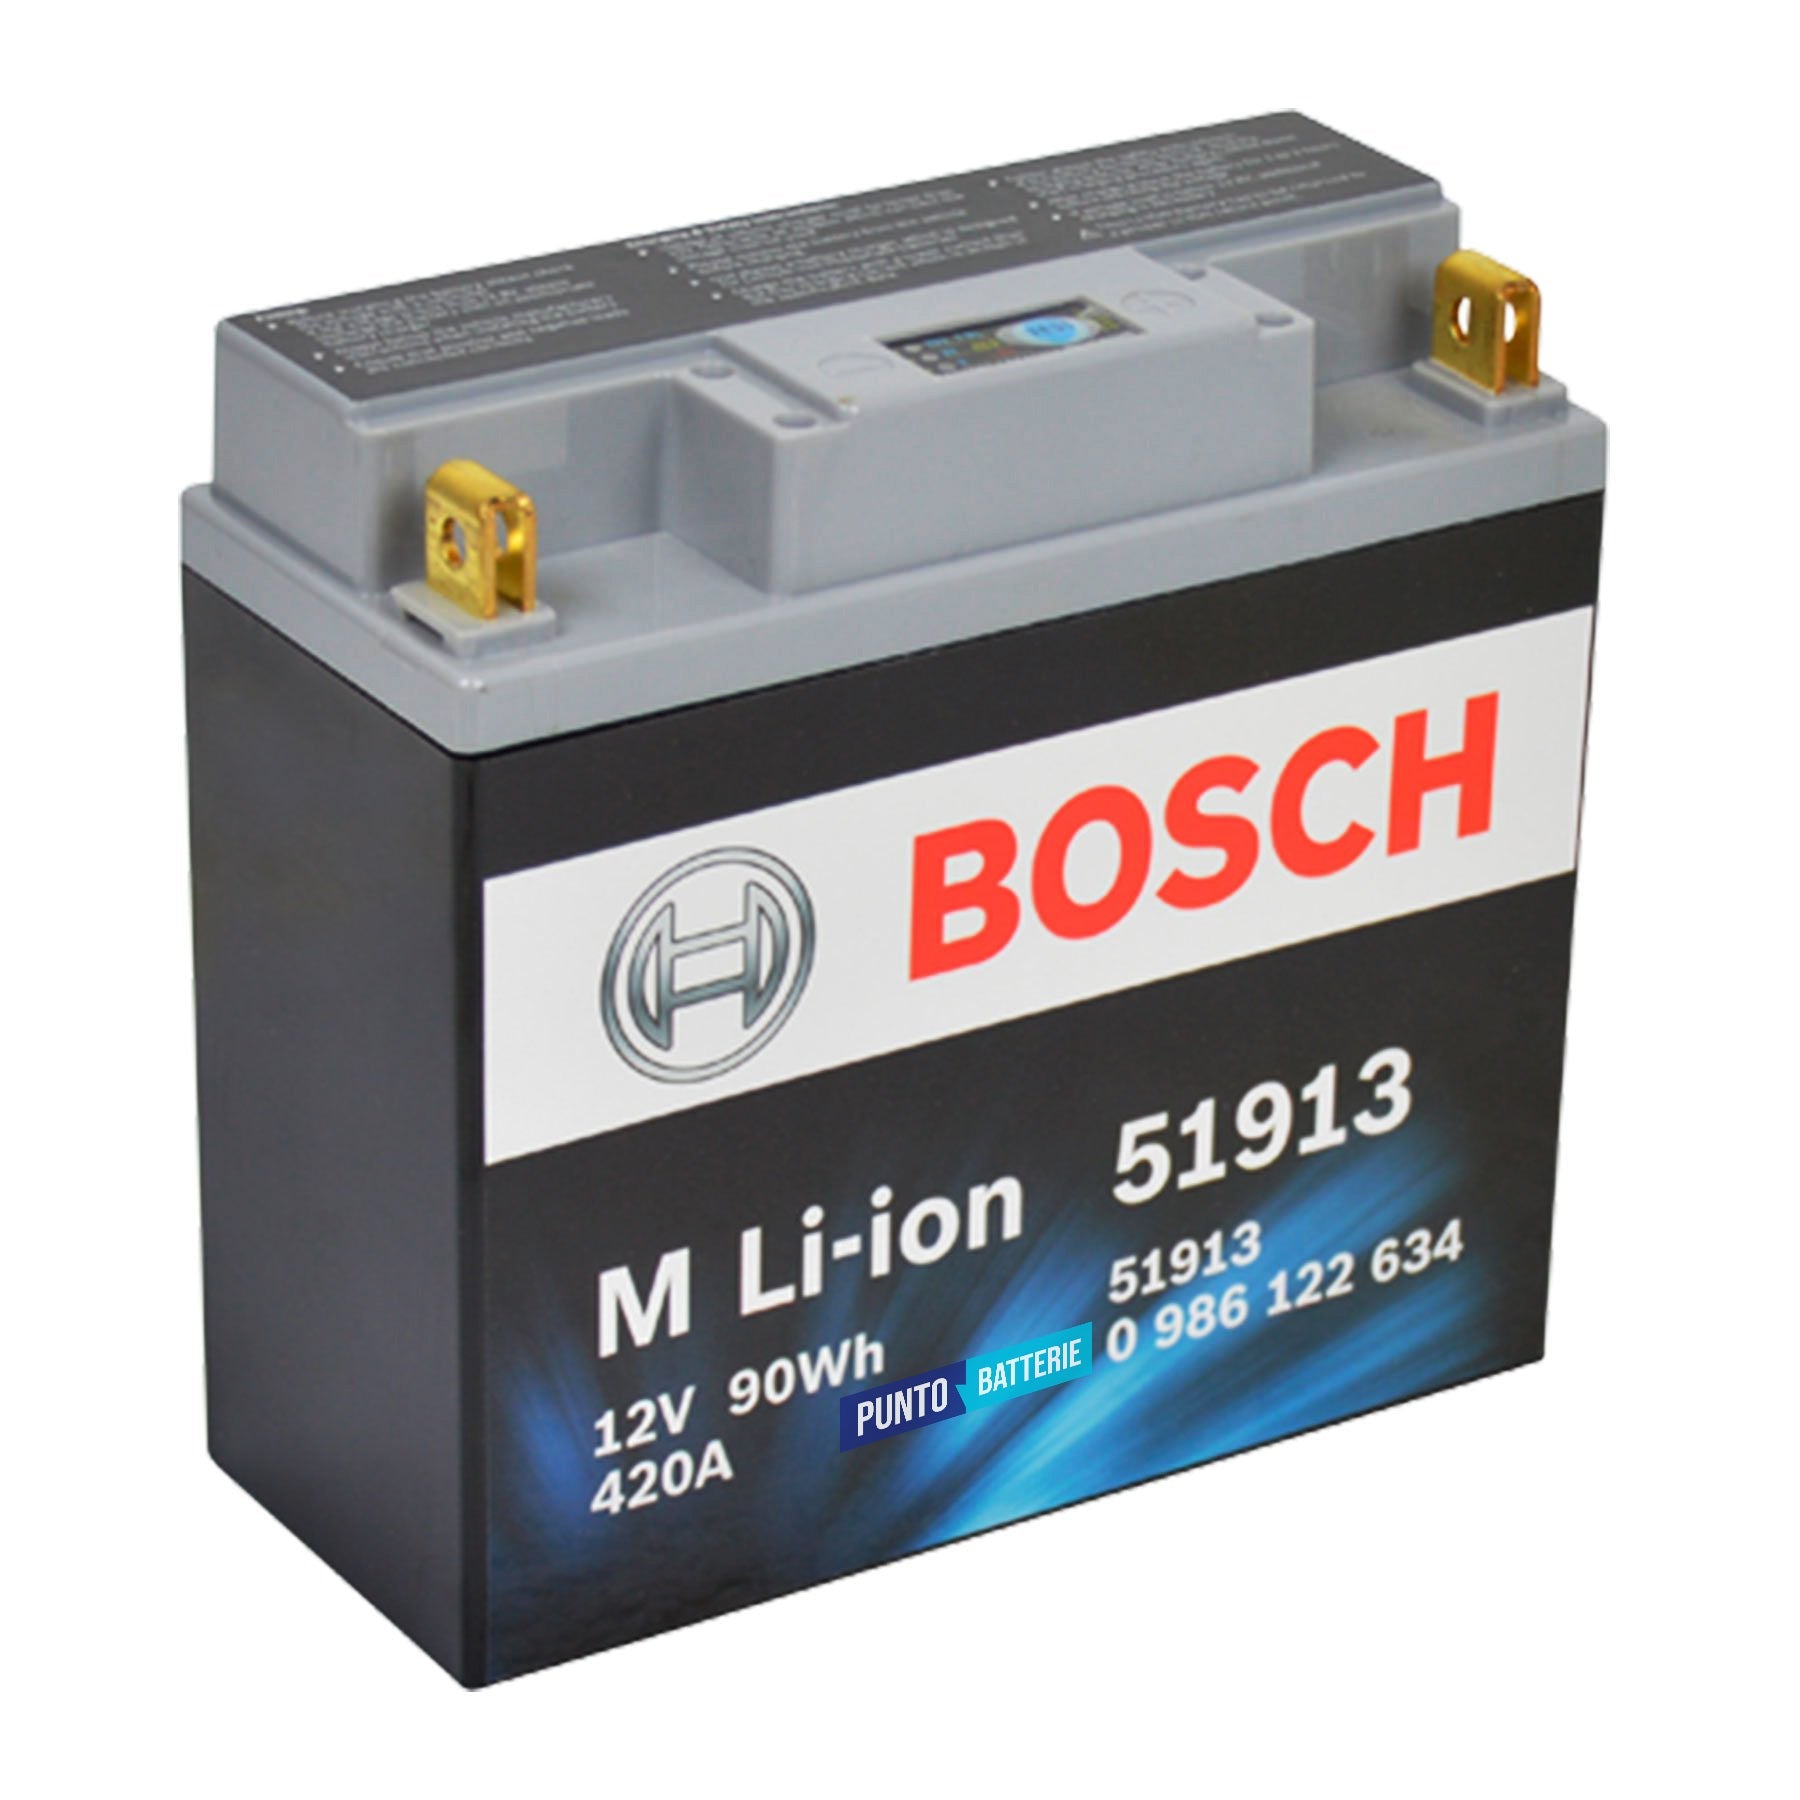 Batteria originale Bosch M Li-ion 51913, dimensioni 181 x 77 x 170, polo positivo a destra, 12 volt, 7 amperora, 450 ampere. Batteria per moto, scooter e powersport.